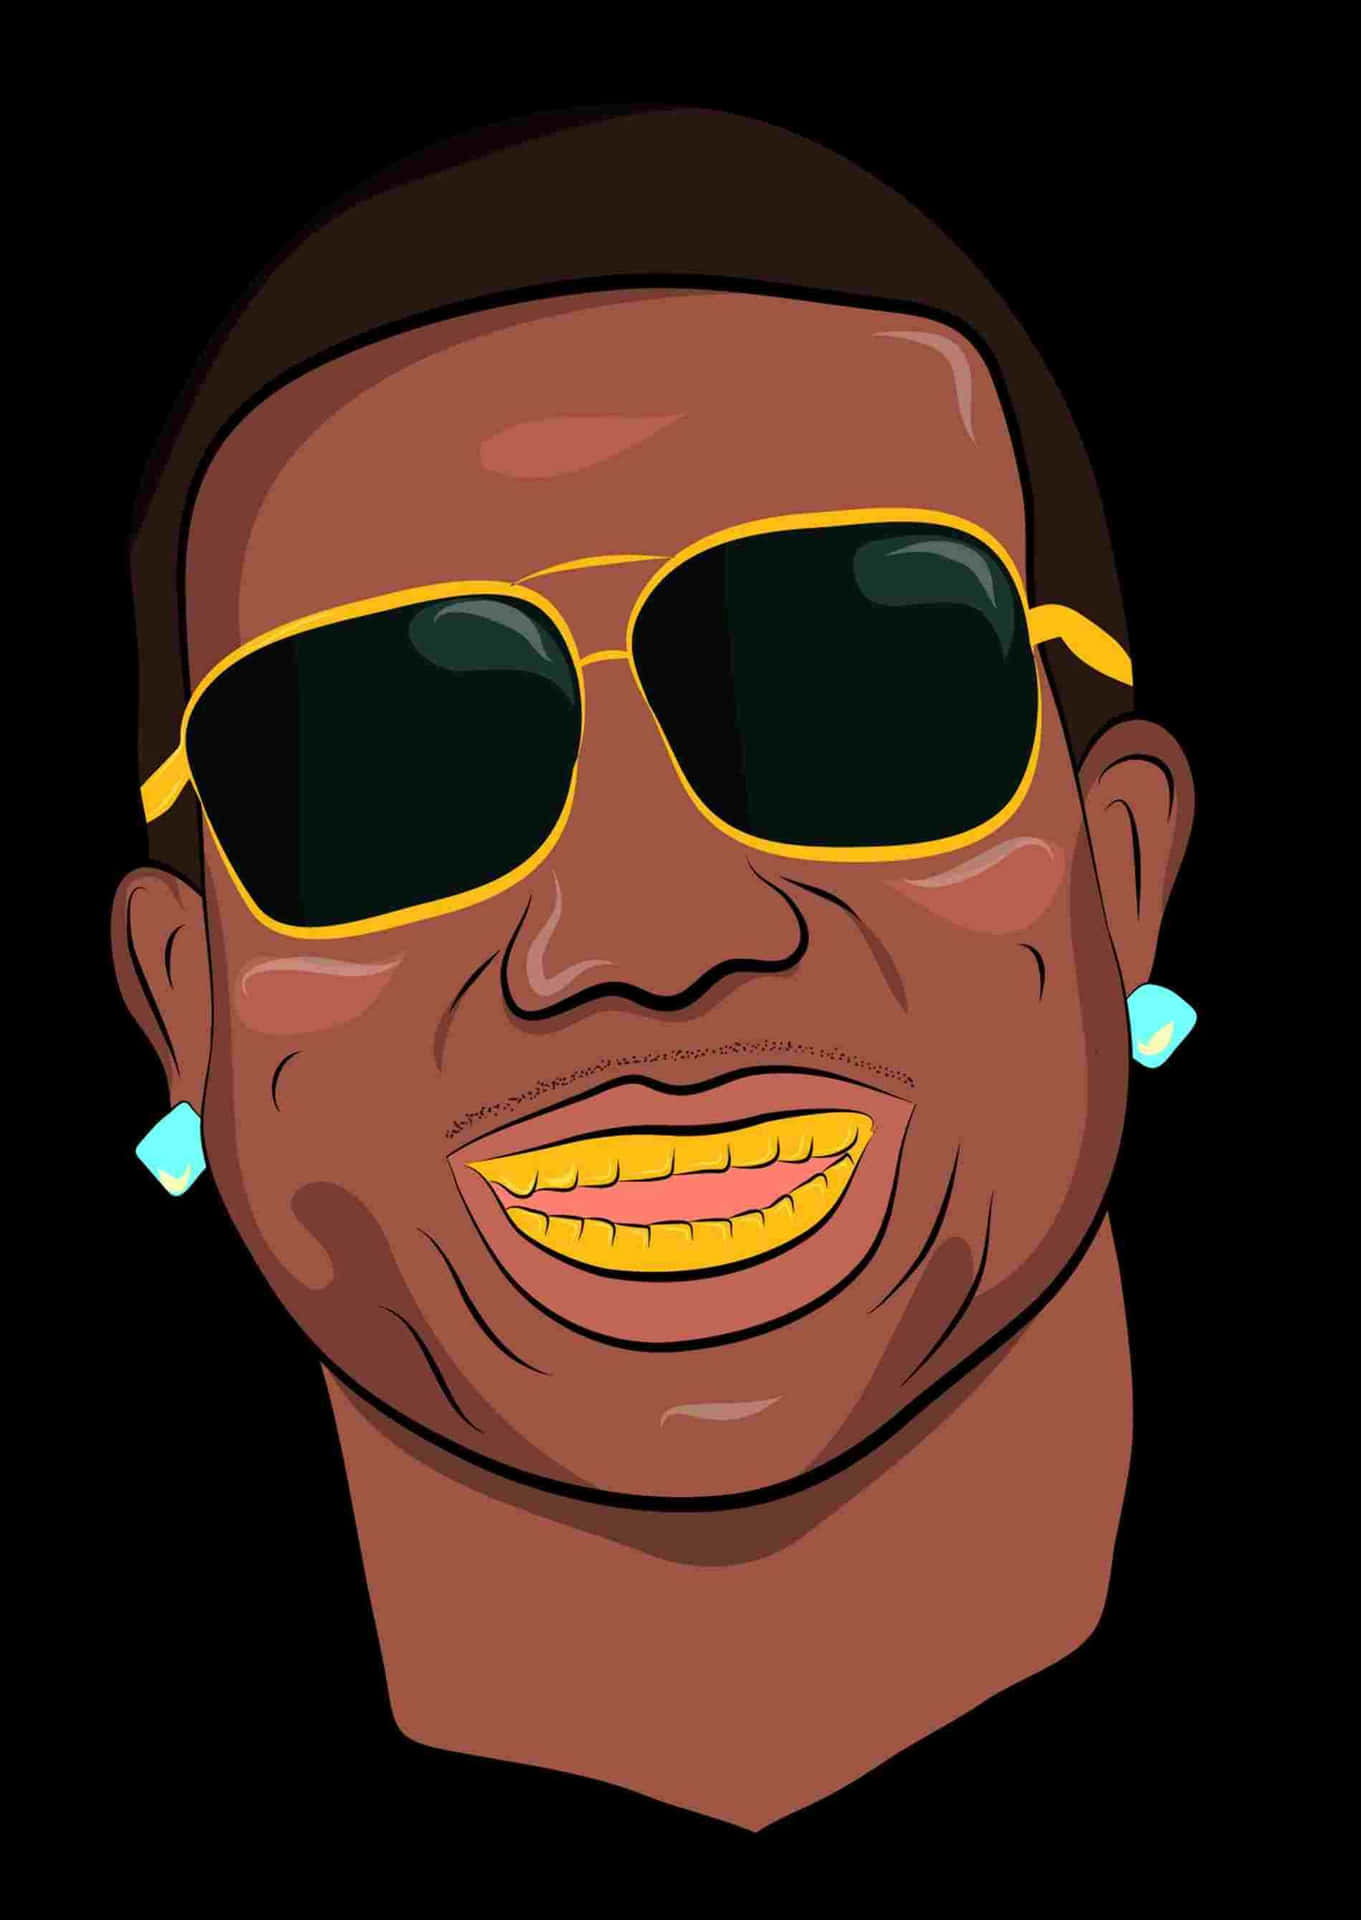 Download Cartoon Rapper Gucci Mane Gold Teeth Wallpaper 